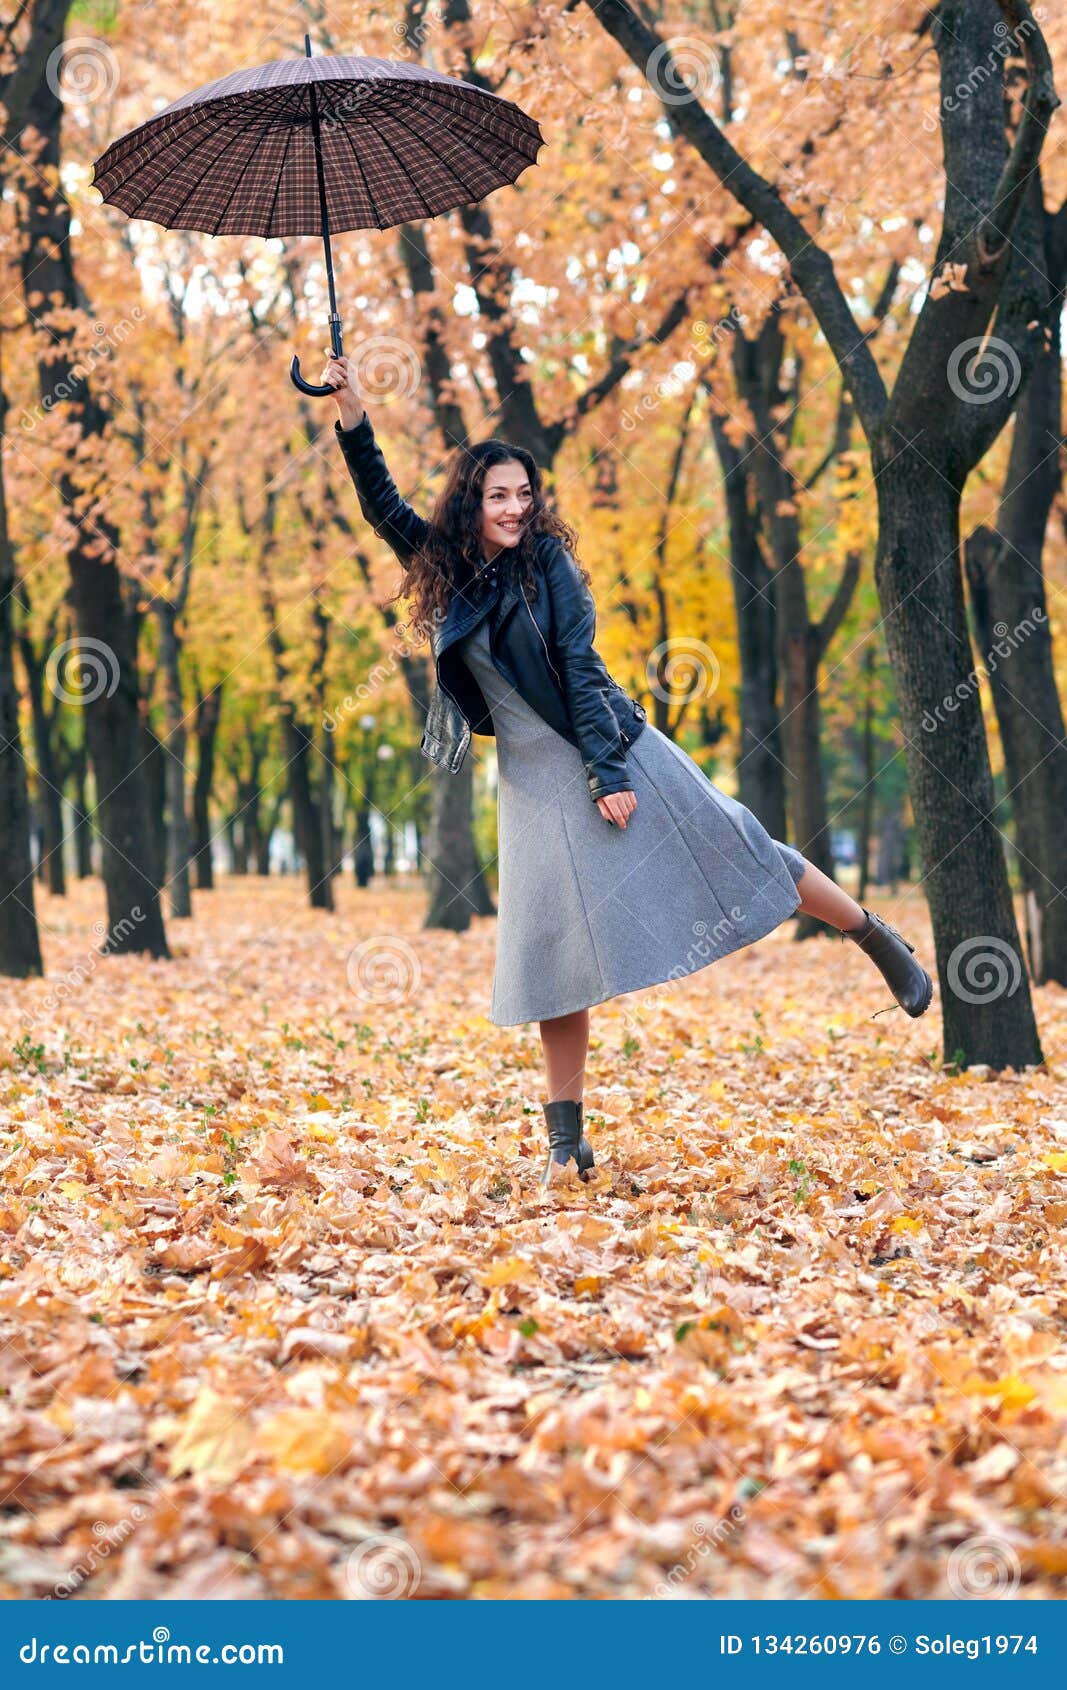 Осенние Фото С Красным Зонтом